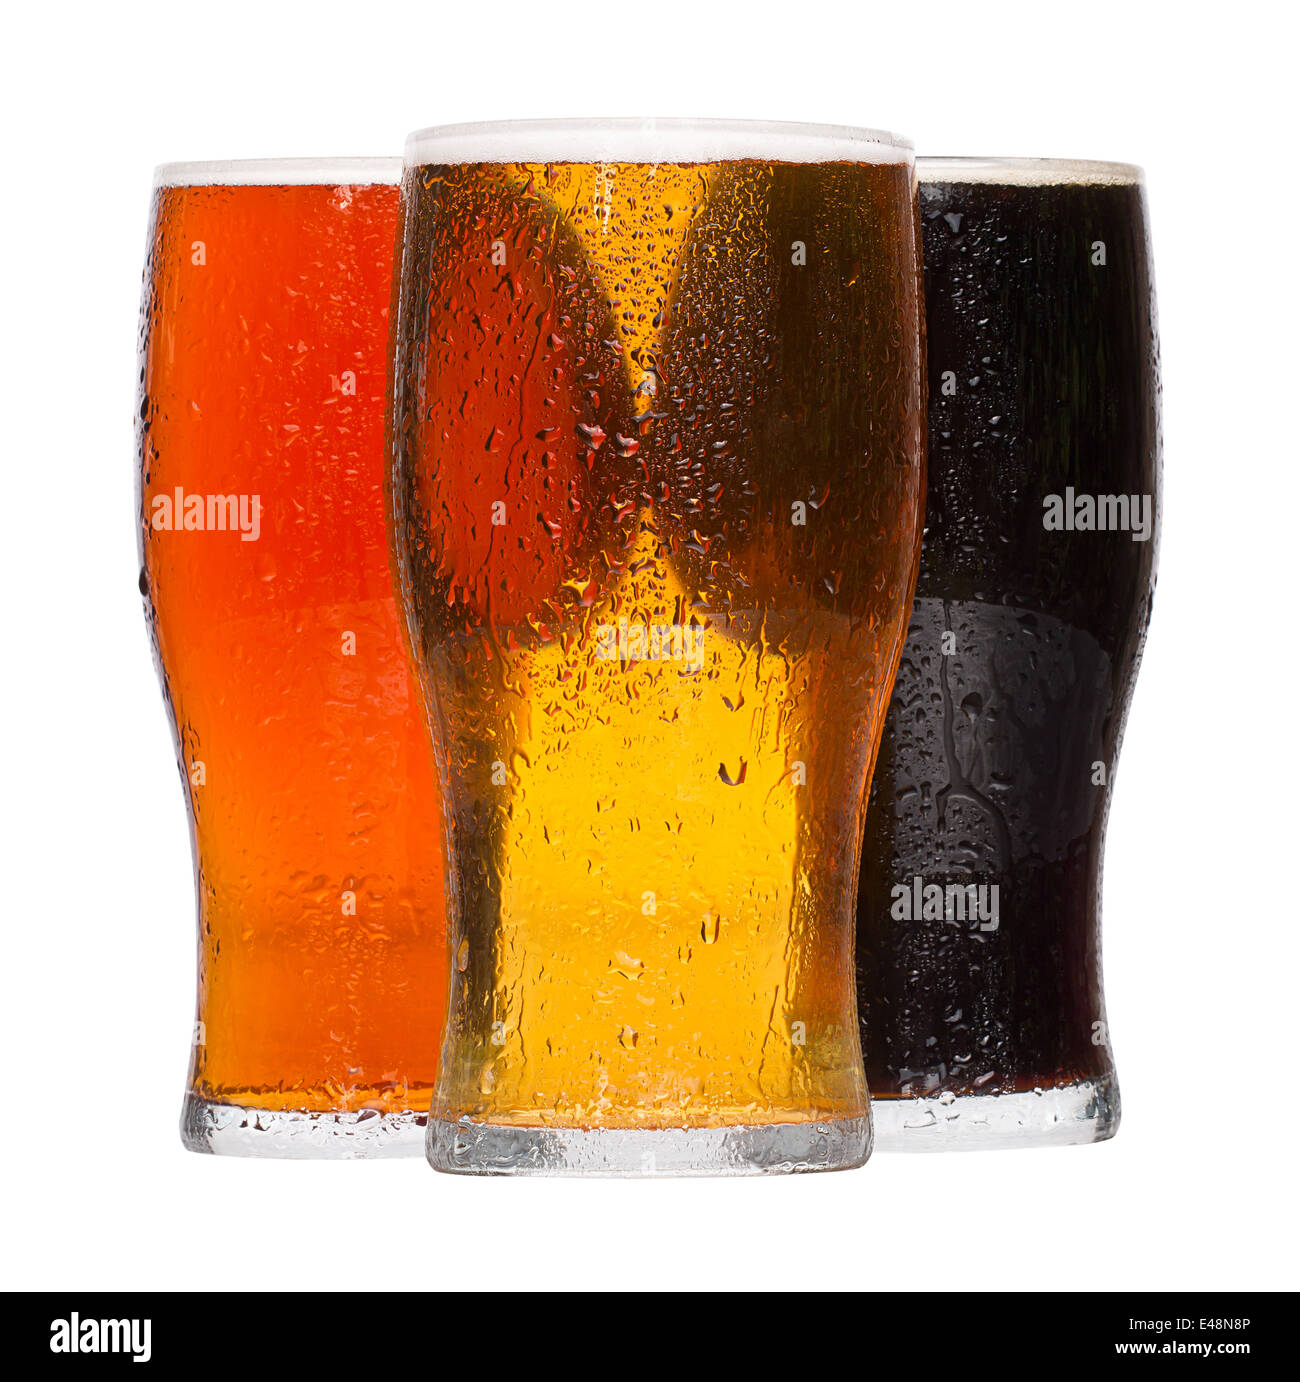 Diversi refrigerate rinfrescante pinte di birra lager e stout servito dalle bevande alcoliche industria Foto Stock